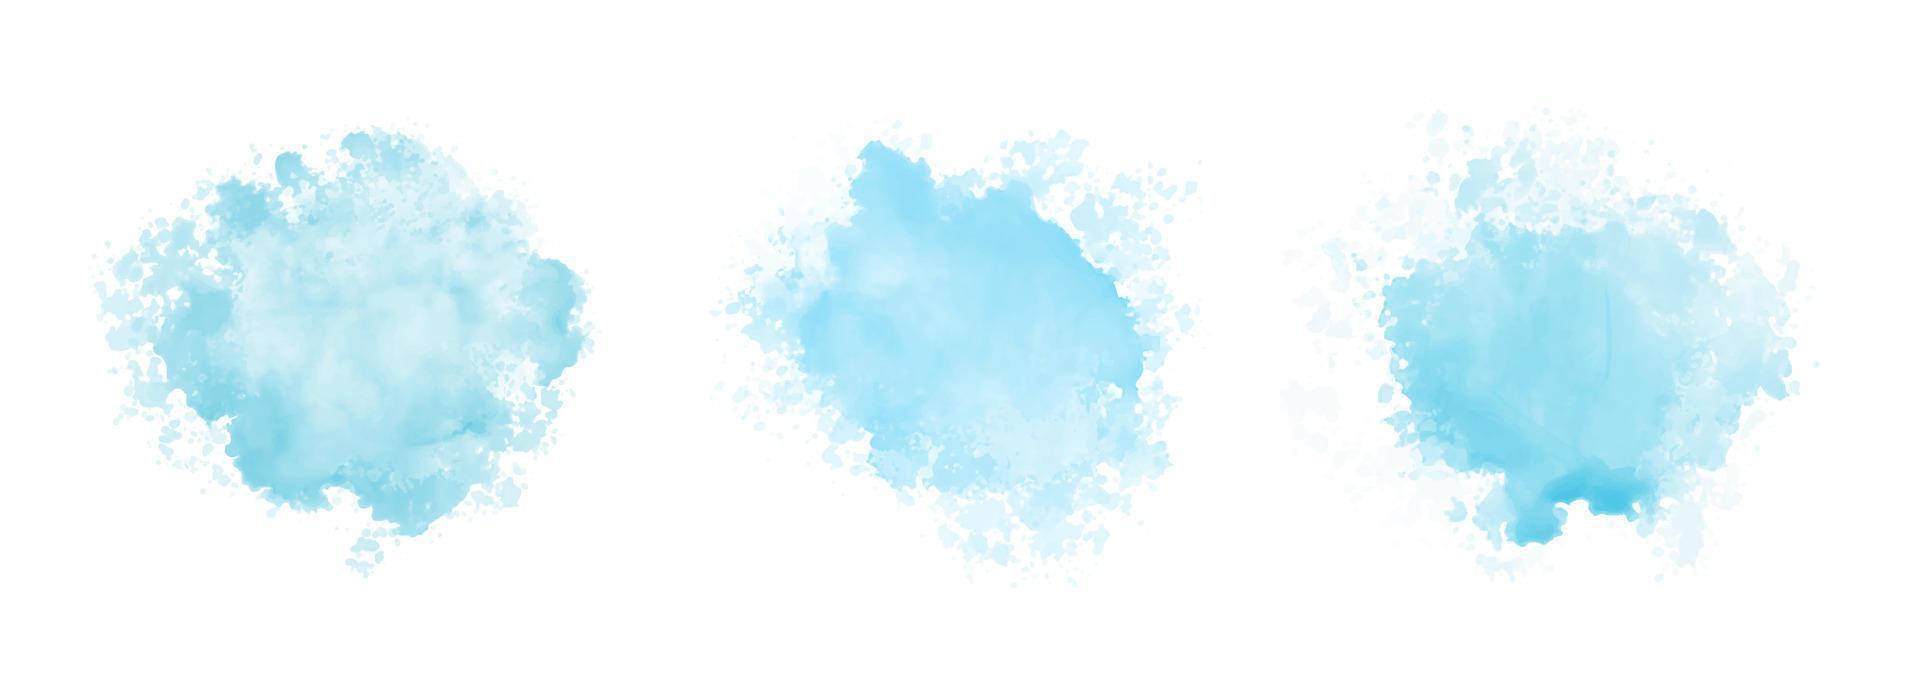 abstrakt mönster med blå akvarell moln på vit bakgrund. cyan akvarell vatten brash stänk textur vektor